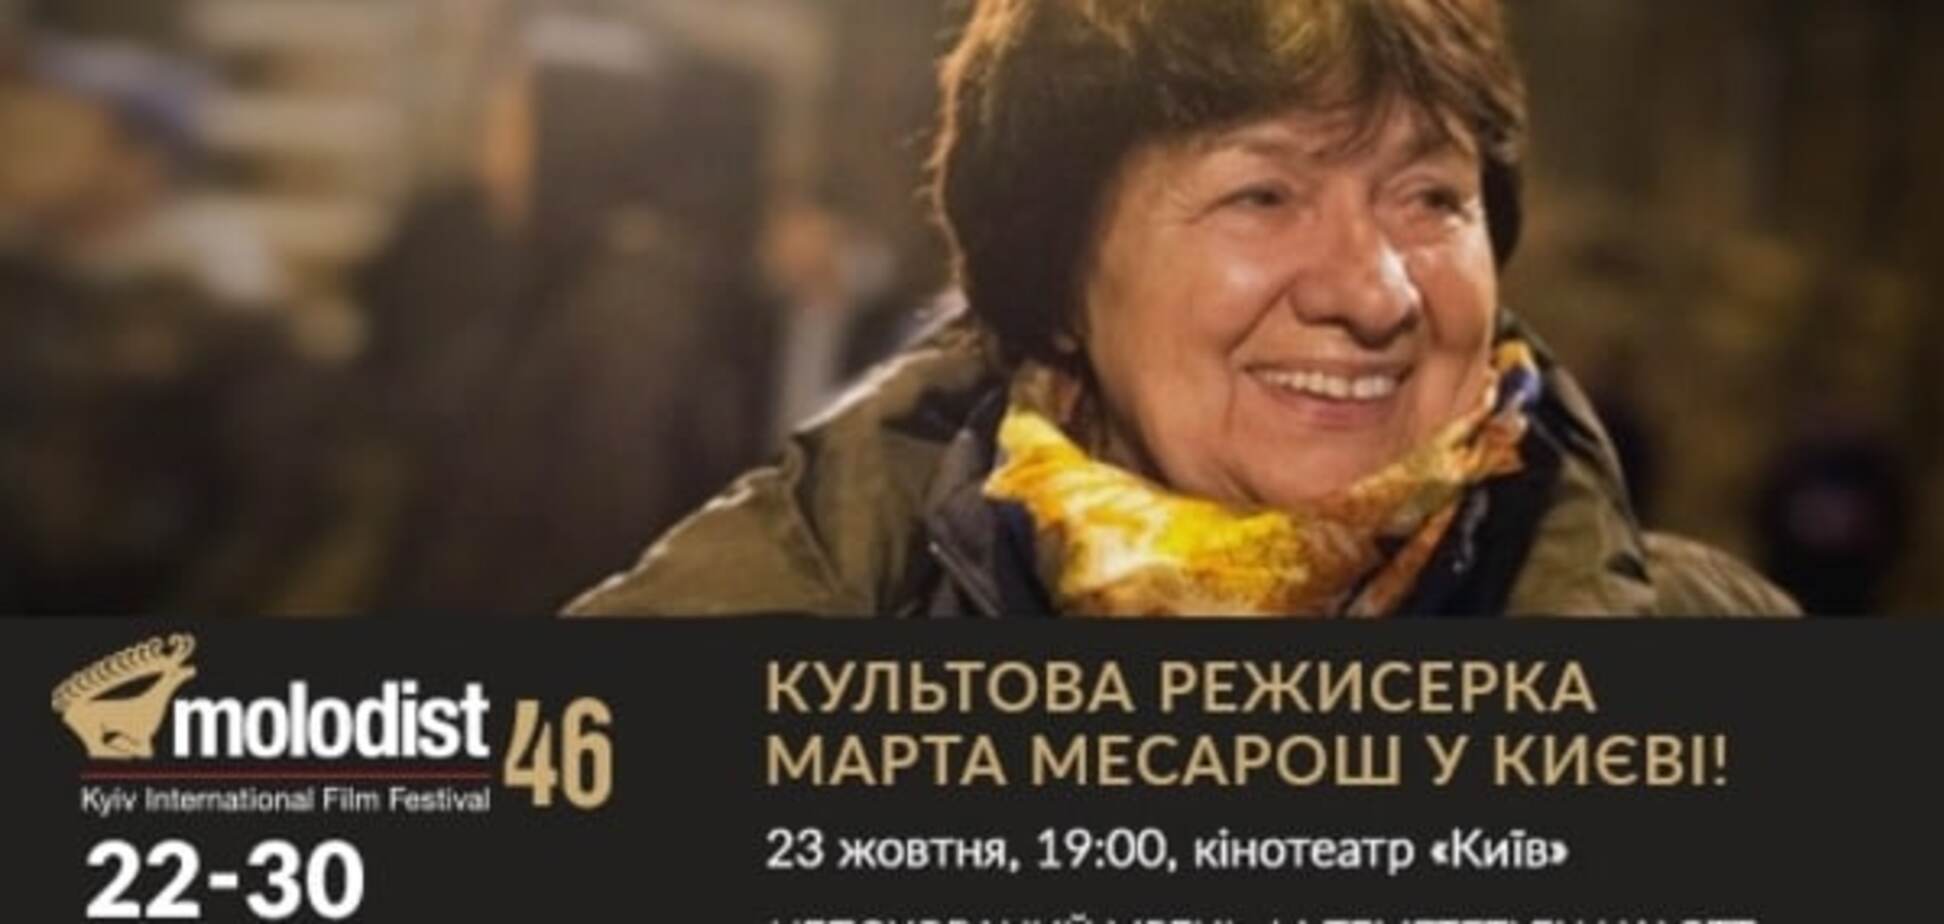 46-й кинофестиваль 'Молодость' посетил известный венгерский режиссер Марта Месарош